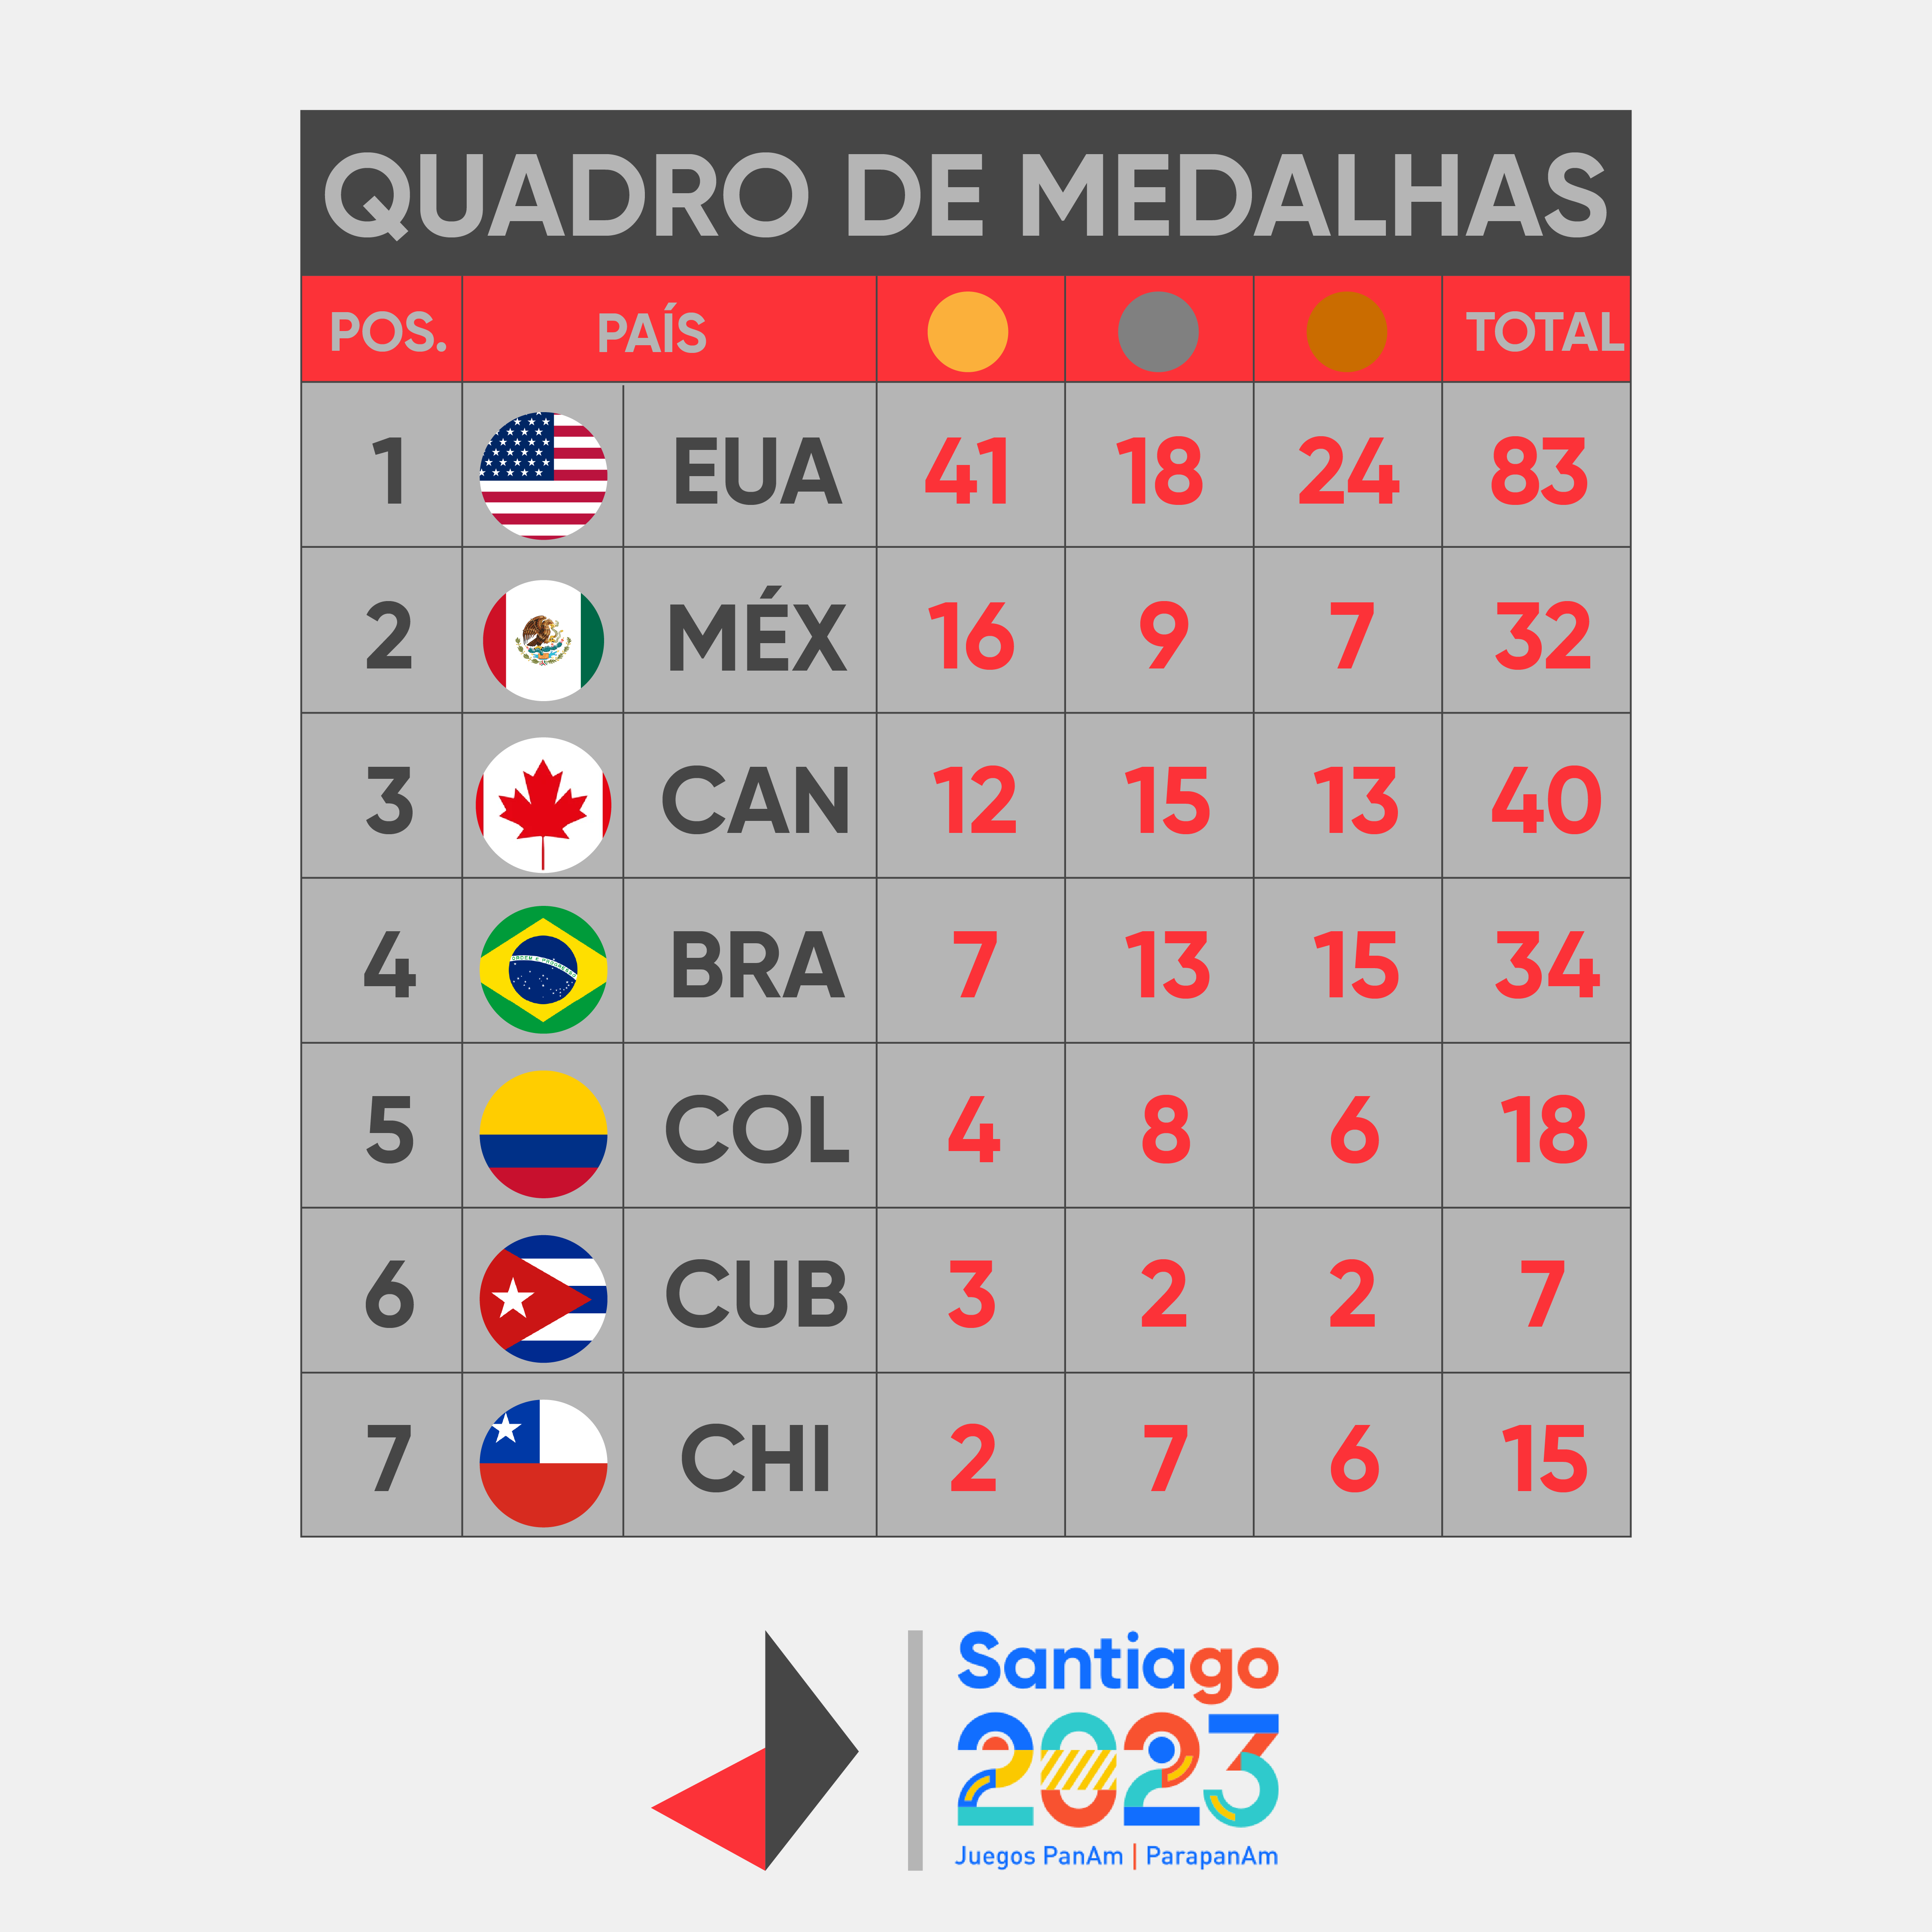 Quadro de medalhas dos Jogos Pan-Americanos ao fim do dia 23 de outubro de 2023